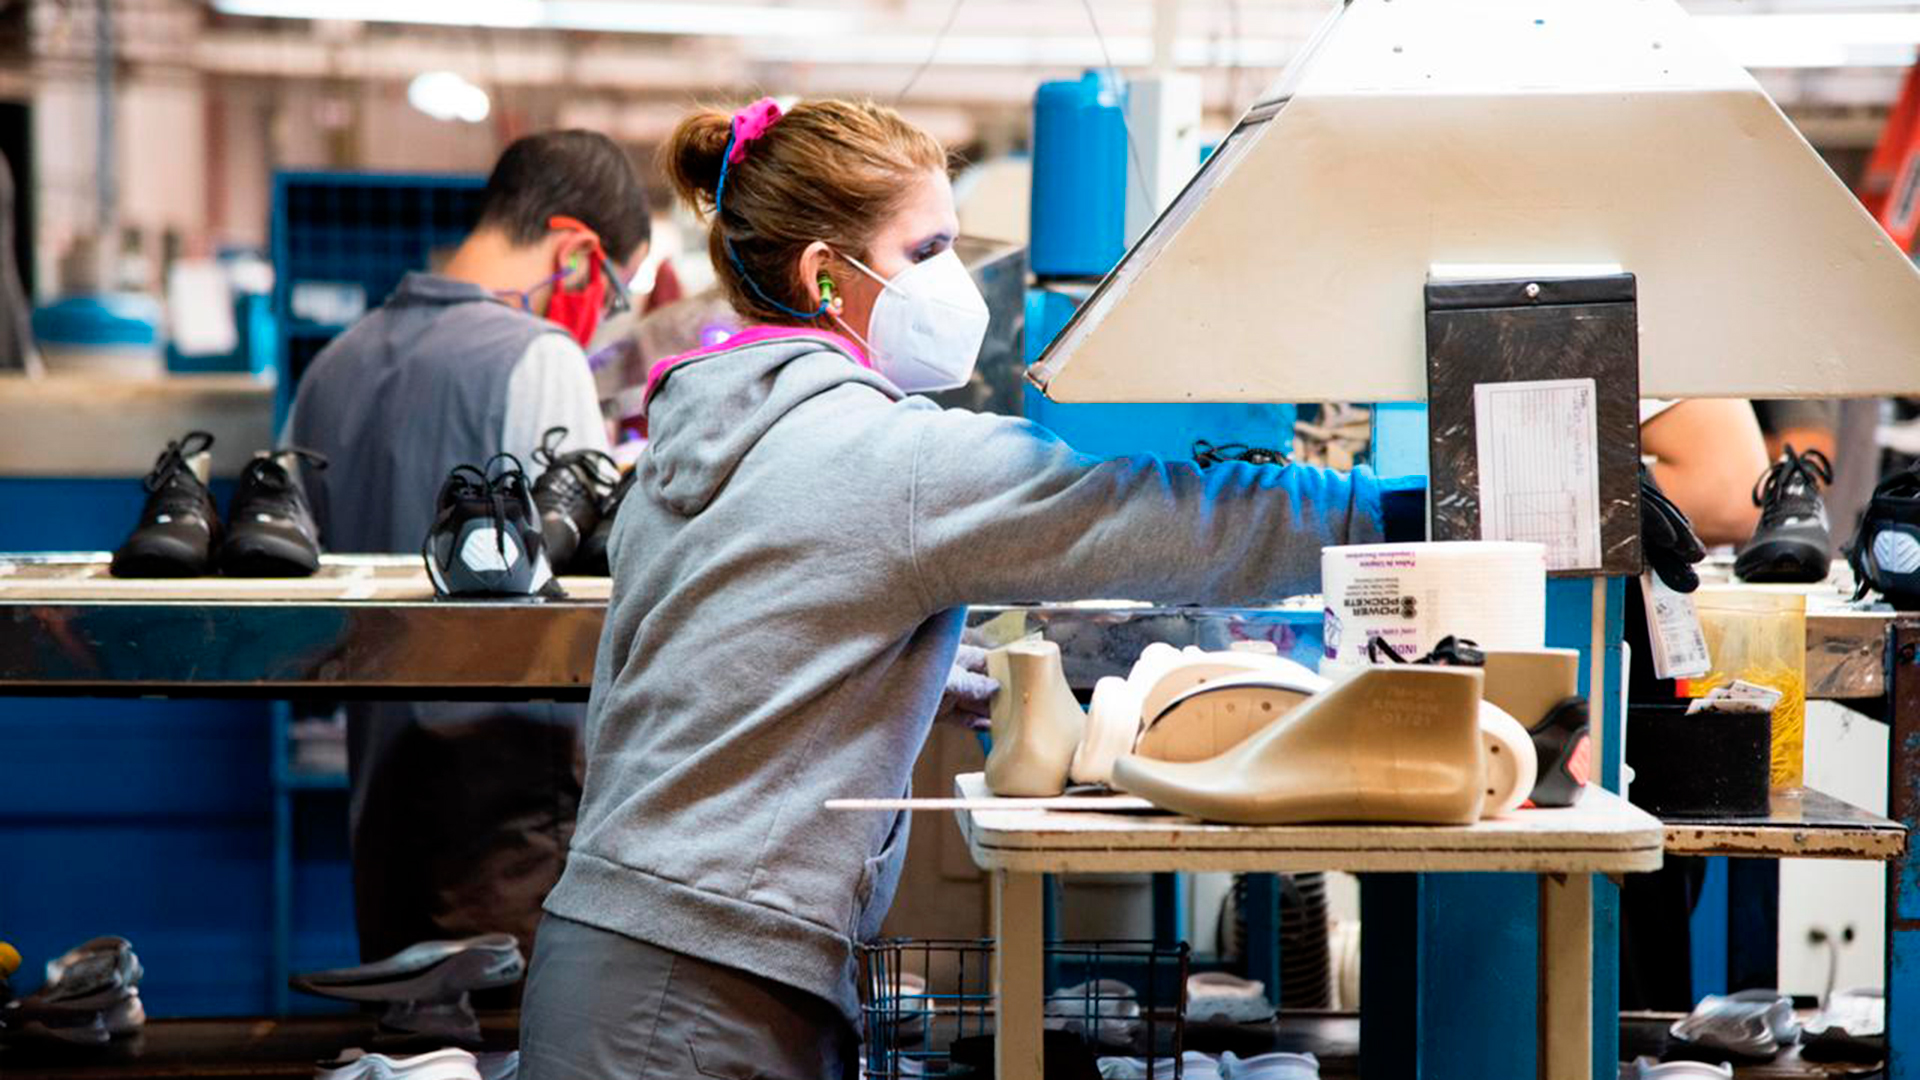 La fábrica de zapatillas Nike en la Argentina paró su producción por falta de insumos importados